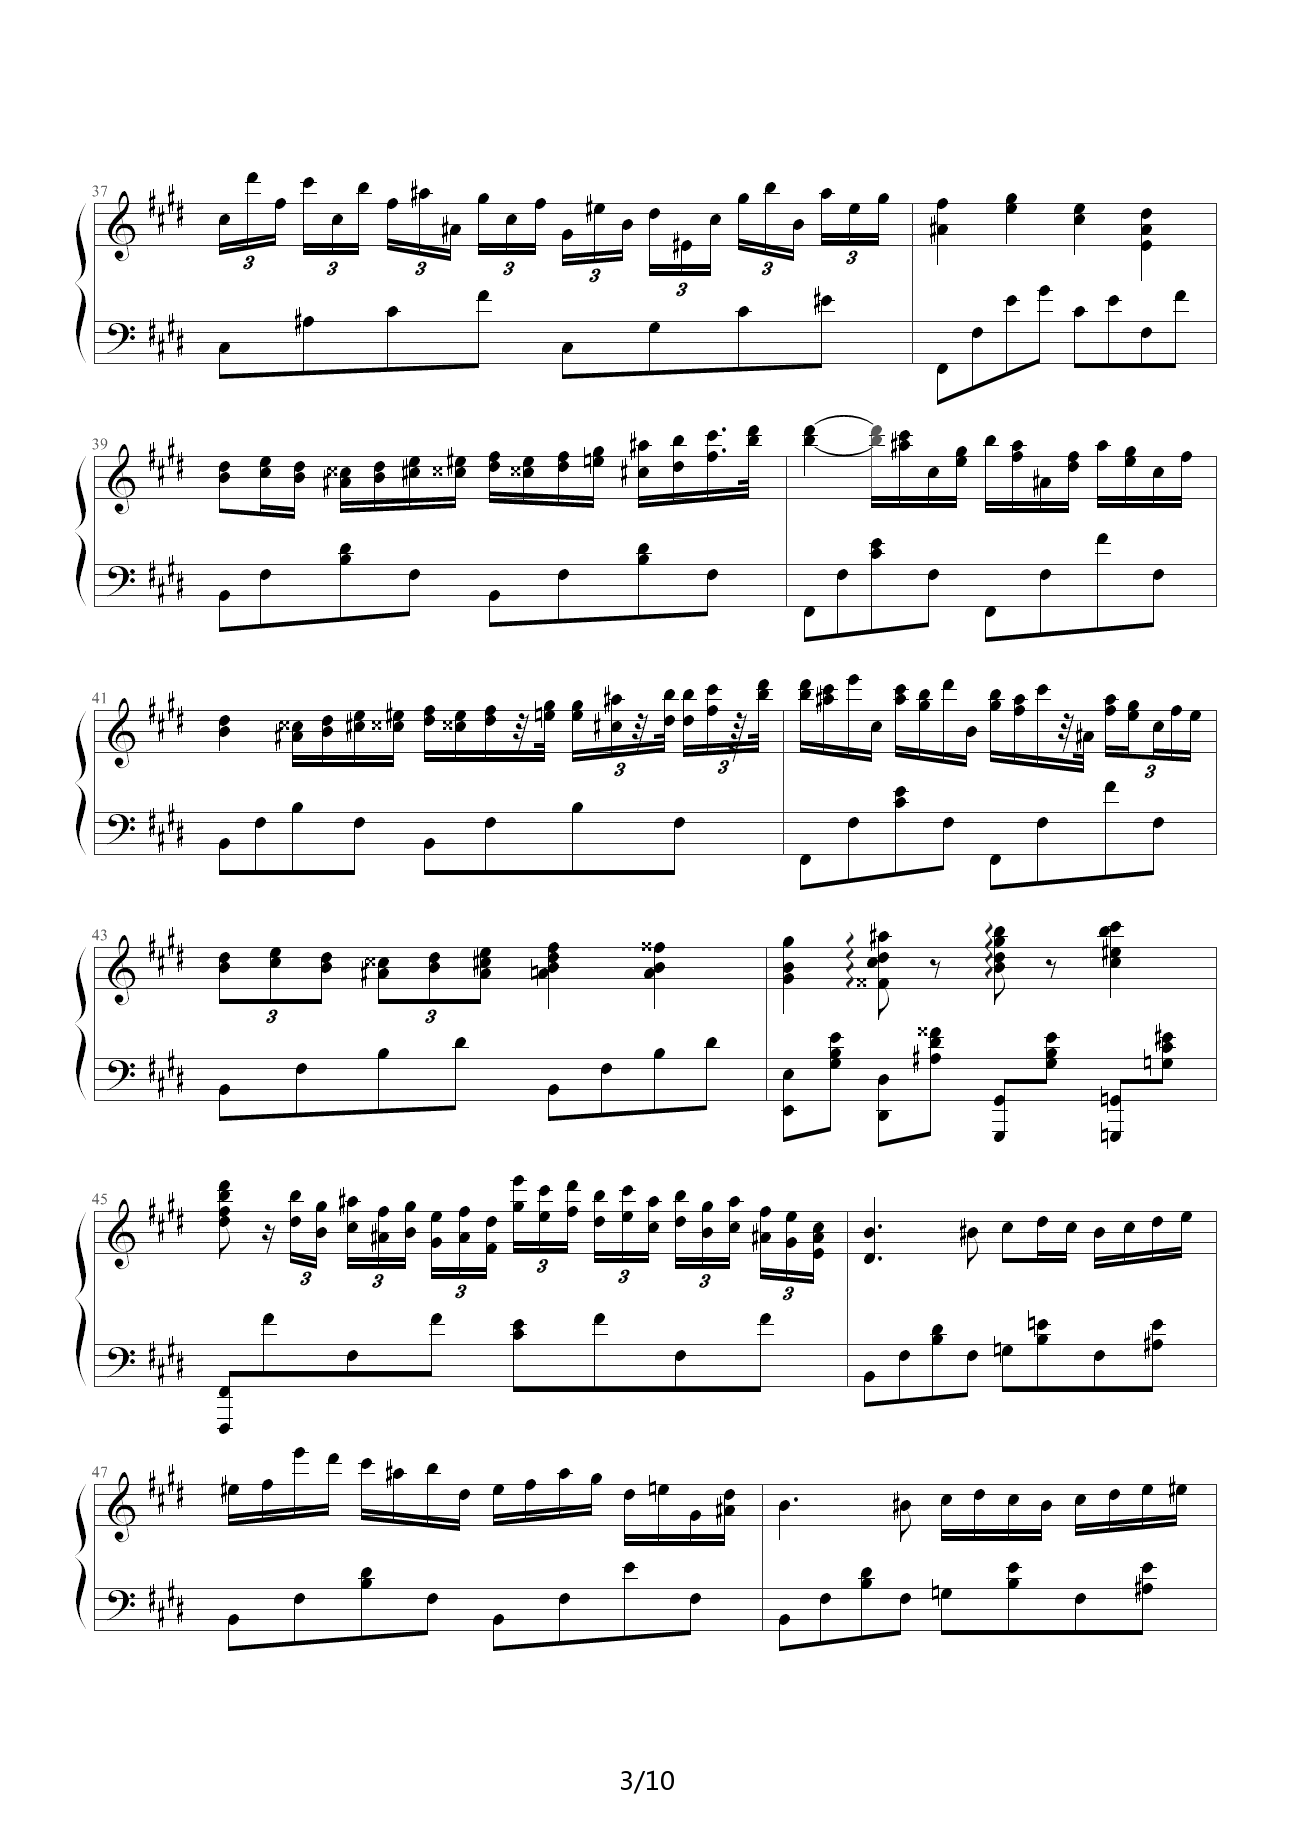 PianoConcertoOp11-2钢琴谱|PianoConcertoOp11-2最新钢琴谱|PianoConcertoOp11-2钢琴谱下载